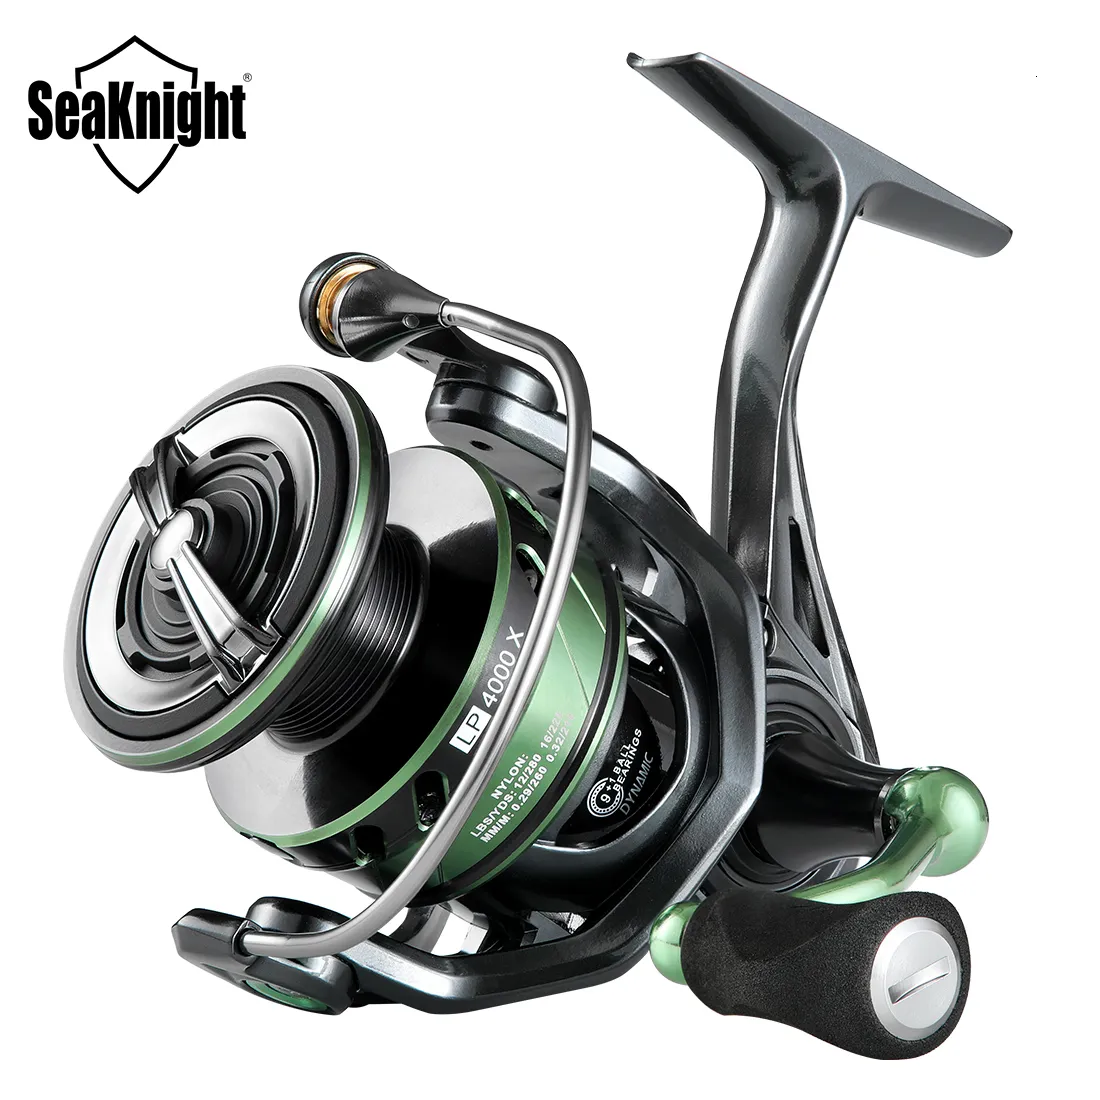 Fishing Accessories SeaKnight Brand WR III X Series Fishing Reels